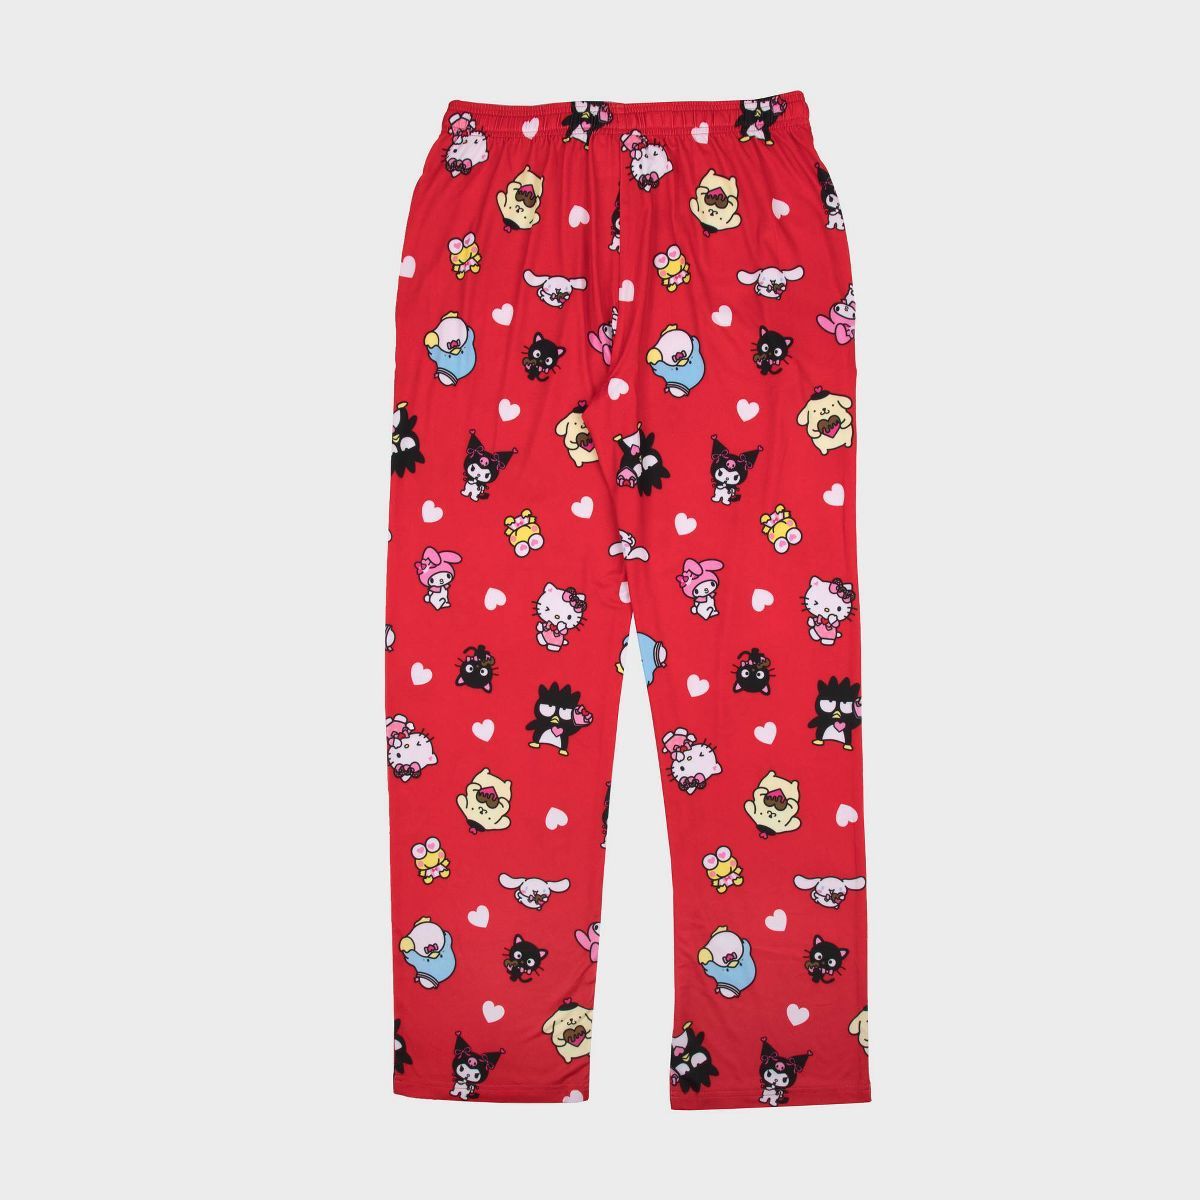 Men's Sanrio Heart Print Pajama Pants - Red | Target